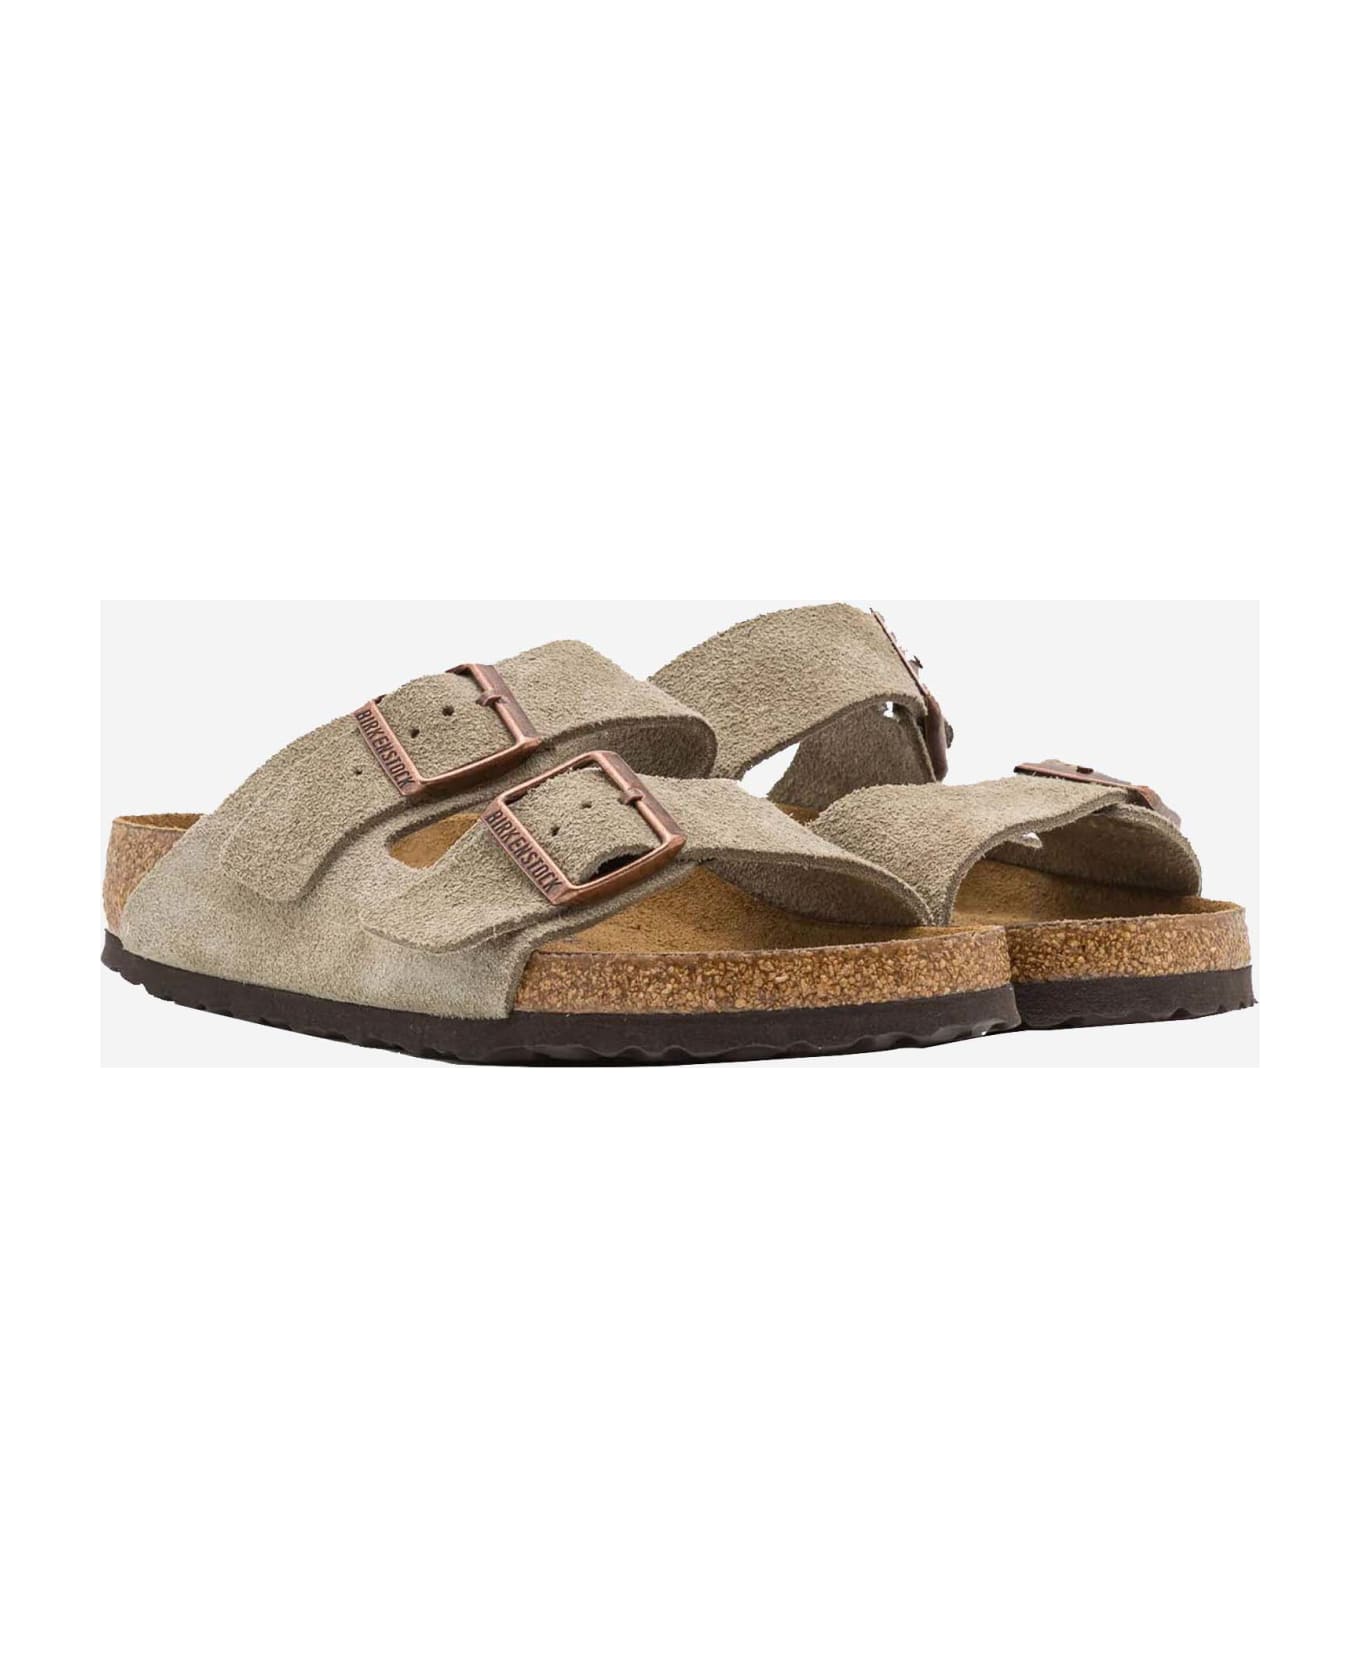 Birkenstock Arizona Suede Sandals - Beige